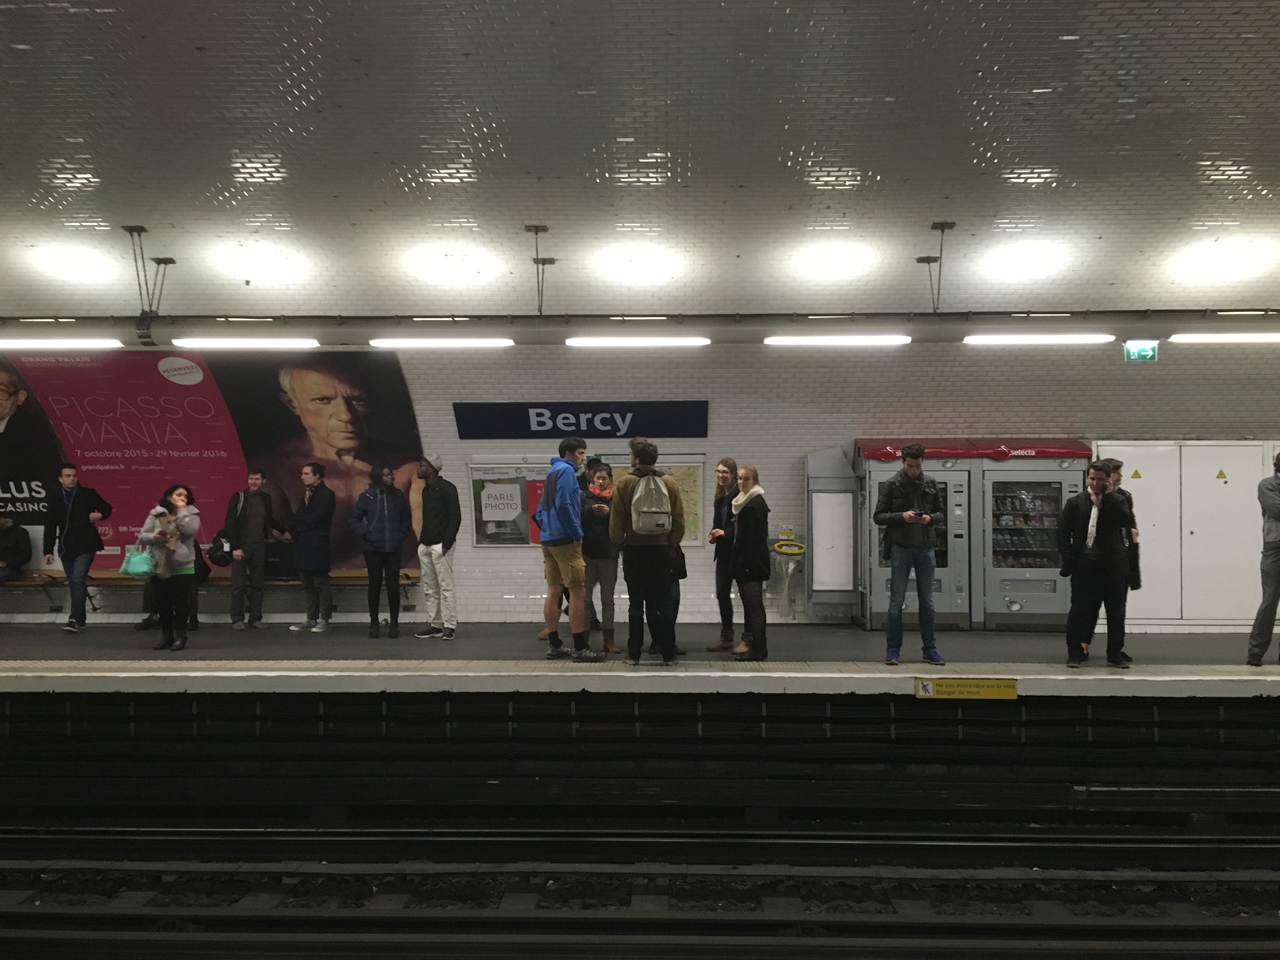 지하철역 지하철역마다 무장한 경찰들이 경계를 서고, 시민들도 구내방송에 귀를 기울이며 방송의 지시에 따라 움직인다.